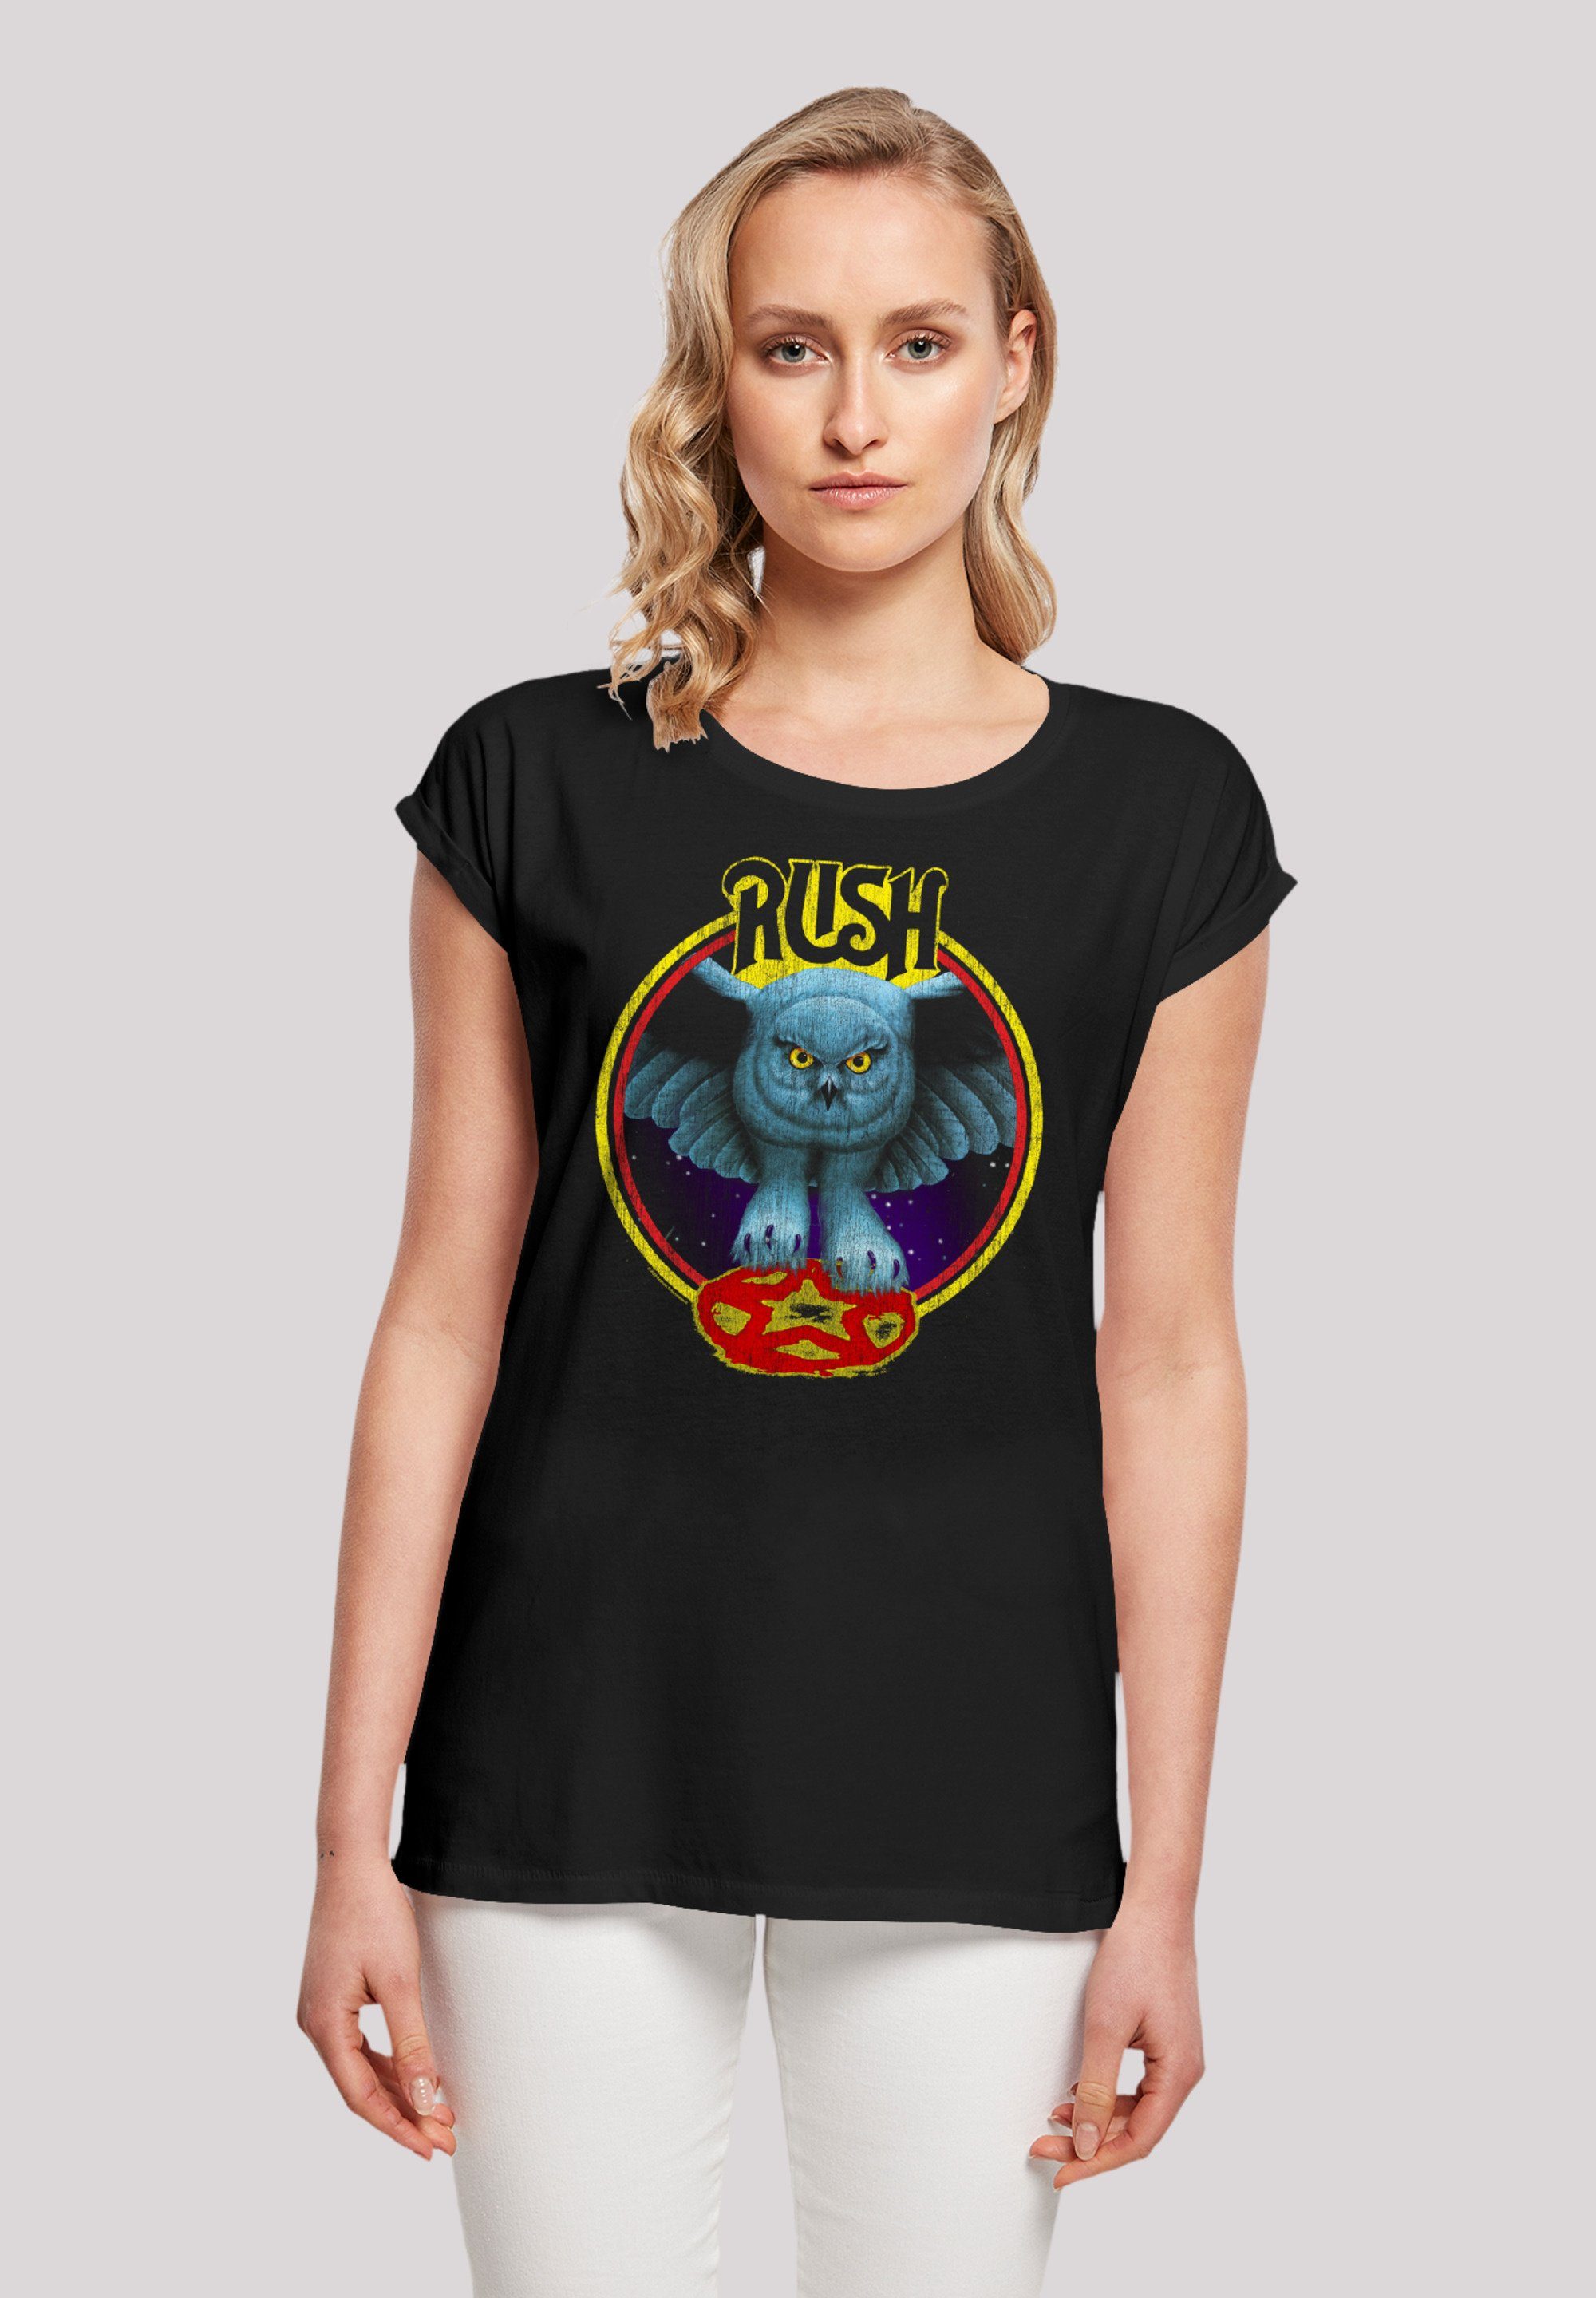 F4NT4STIC T-Shirt Rush Rock Band Fly By Night Circle Premium Qualität